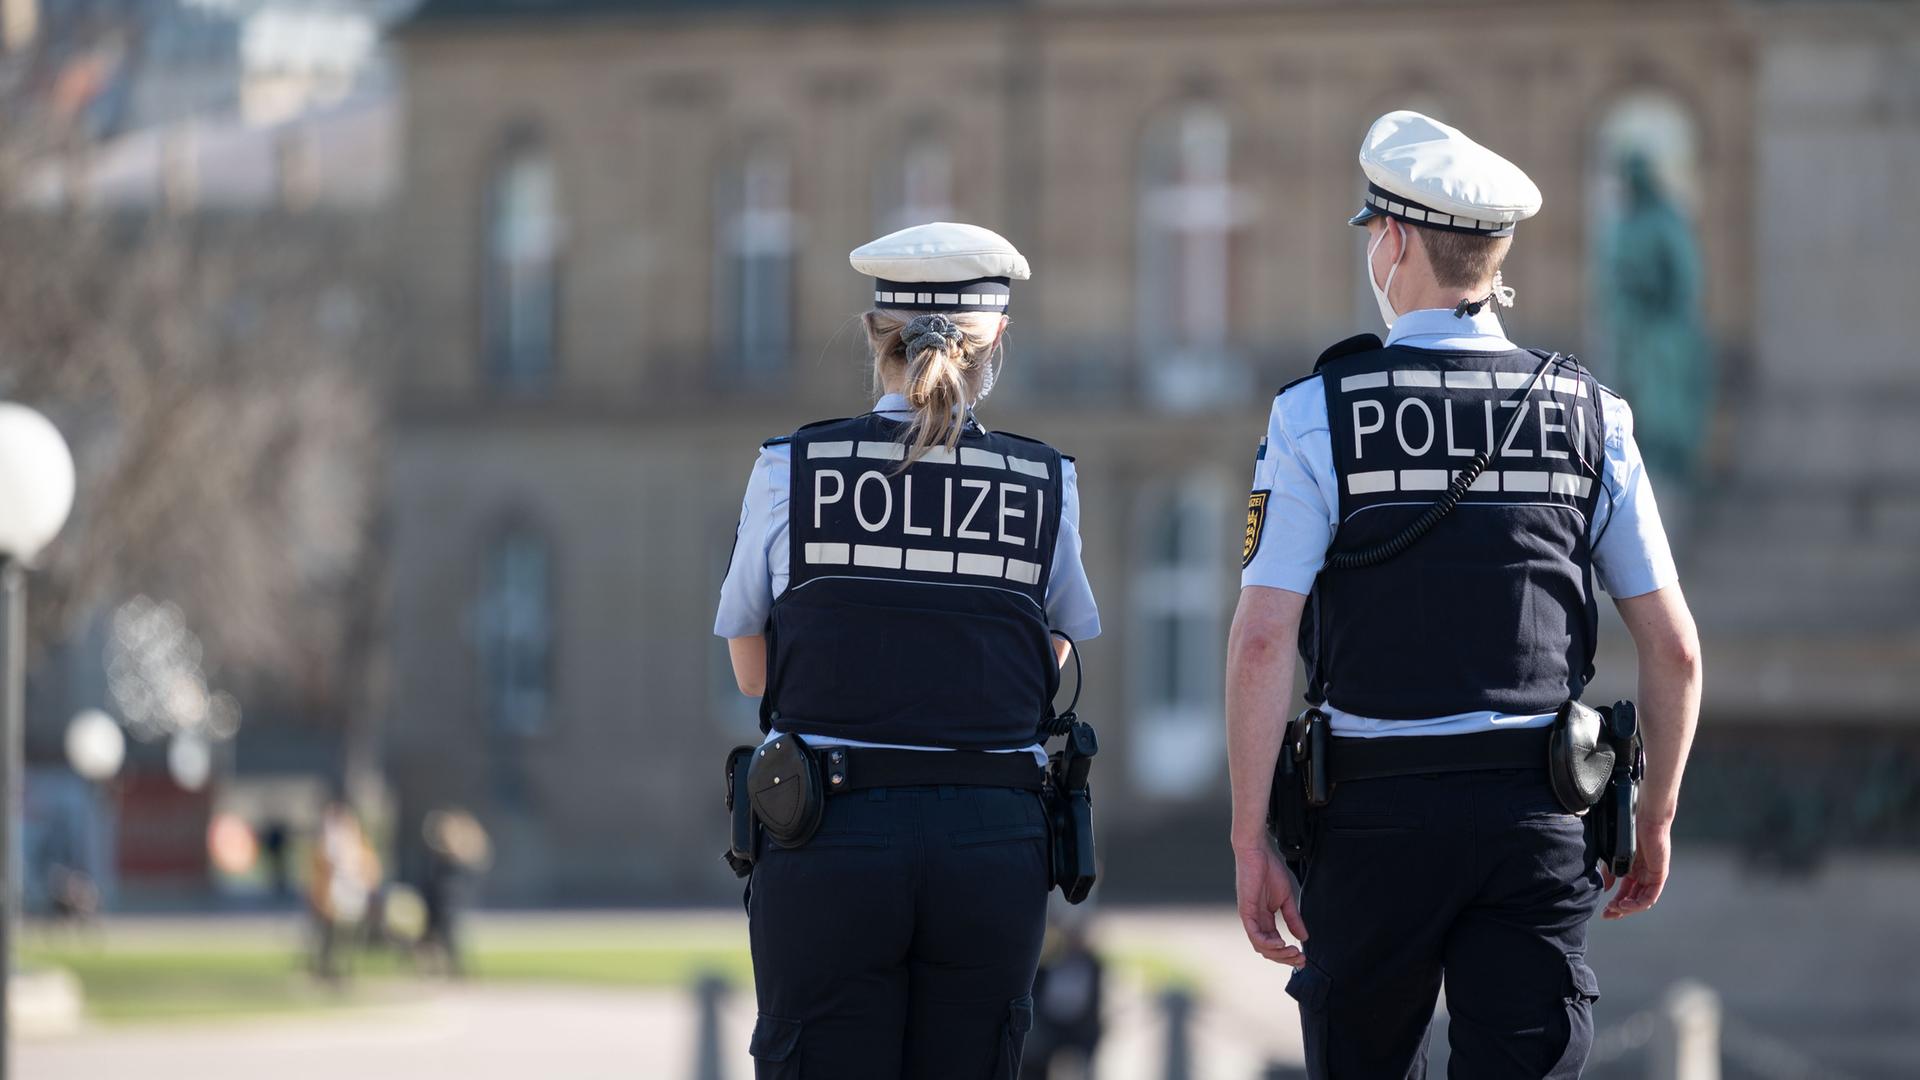 Ein Polizist und eine Polizistin gehen über den Schlossplatz in Stuttgart, das Schloss ist im Hintergrund zu sehen. Sie haben dem Betrachter den Rücken zugewandt.